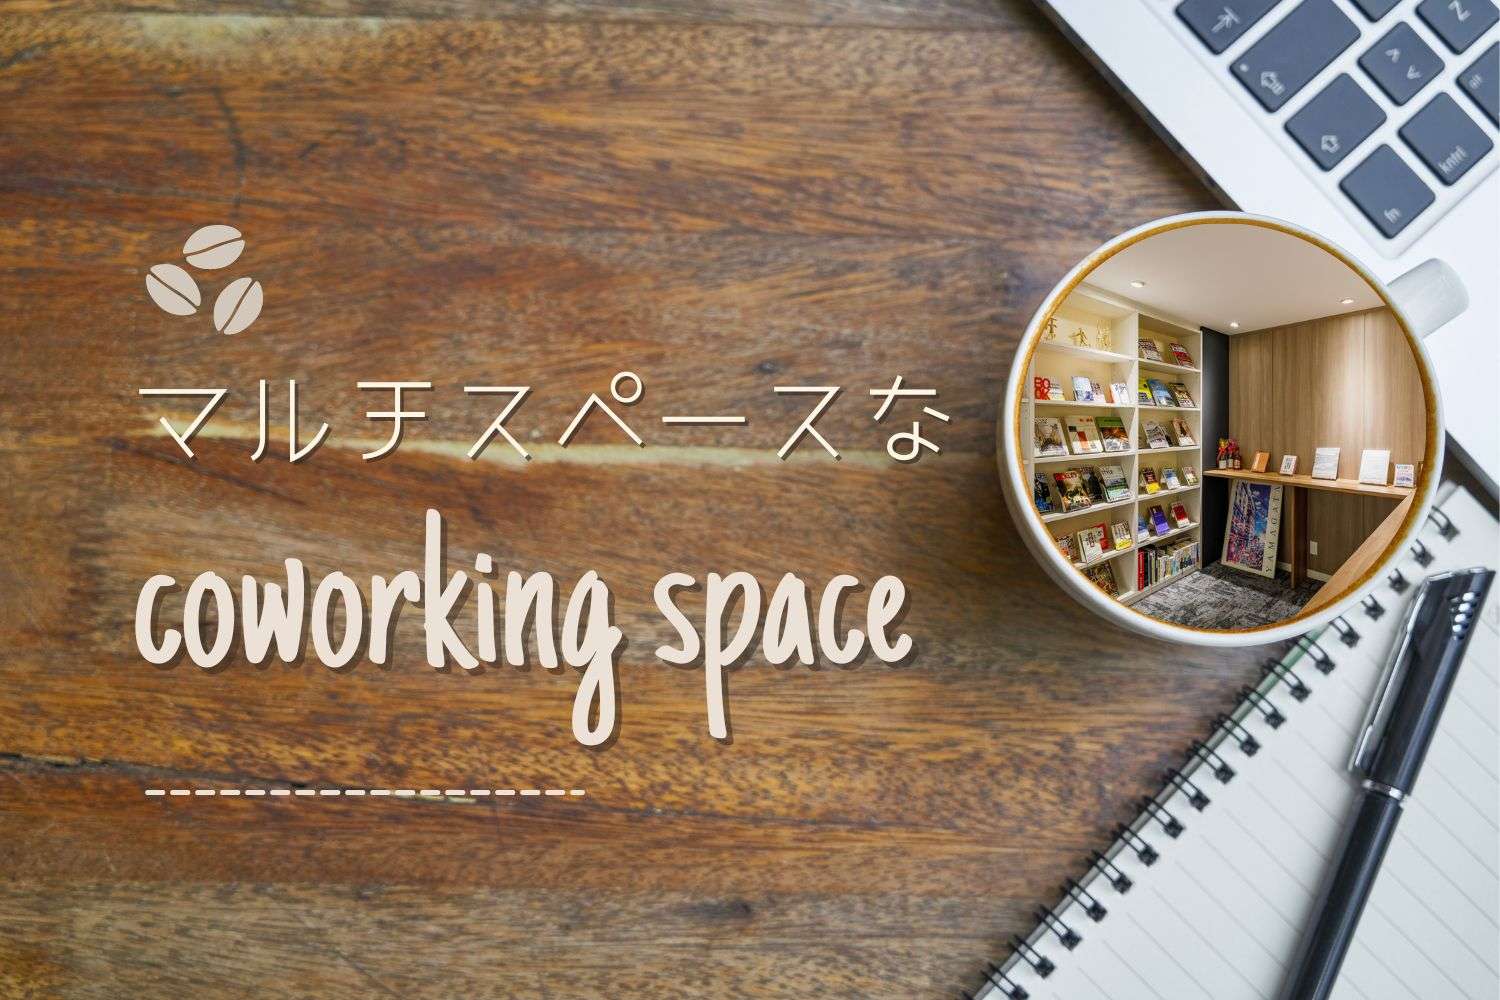 コワーキングスペース|「読書の秋」ライブラリールームはオフィスのマルチスペース